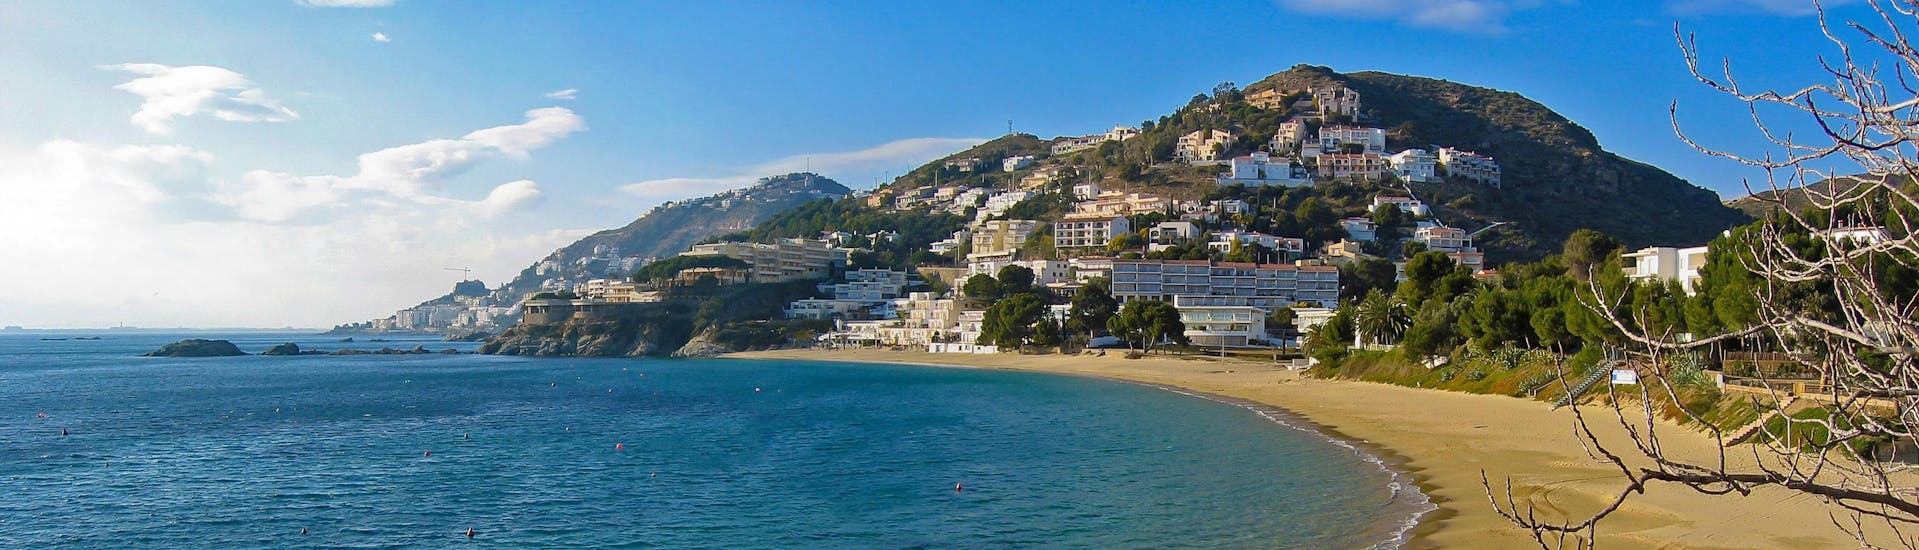 Immagine della costa di Roses, Costa Brava, una destinazione popolare per le gite in barca.